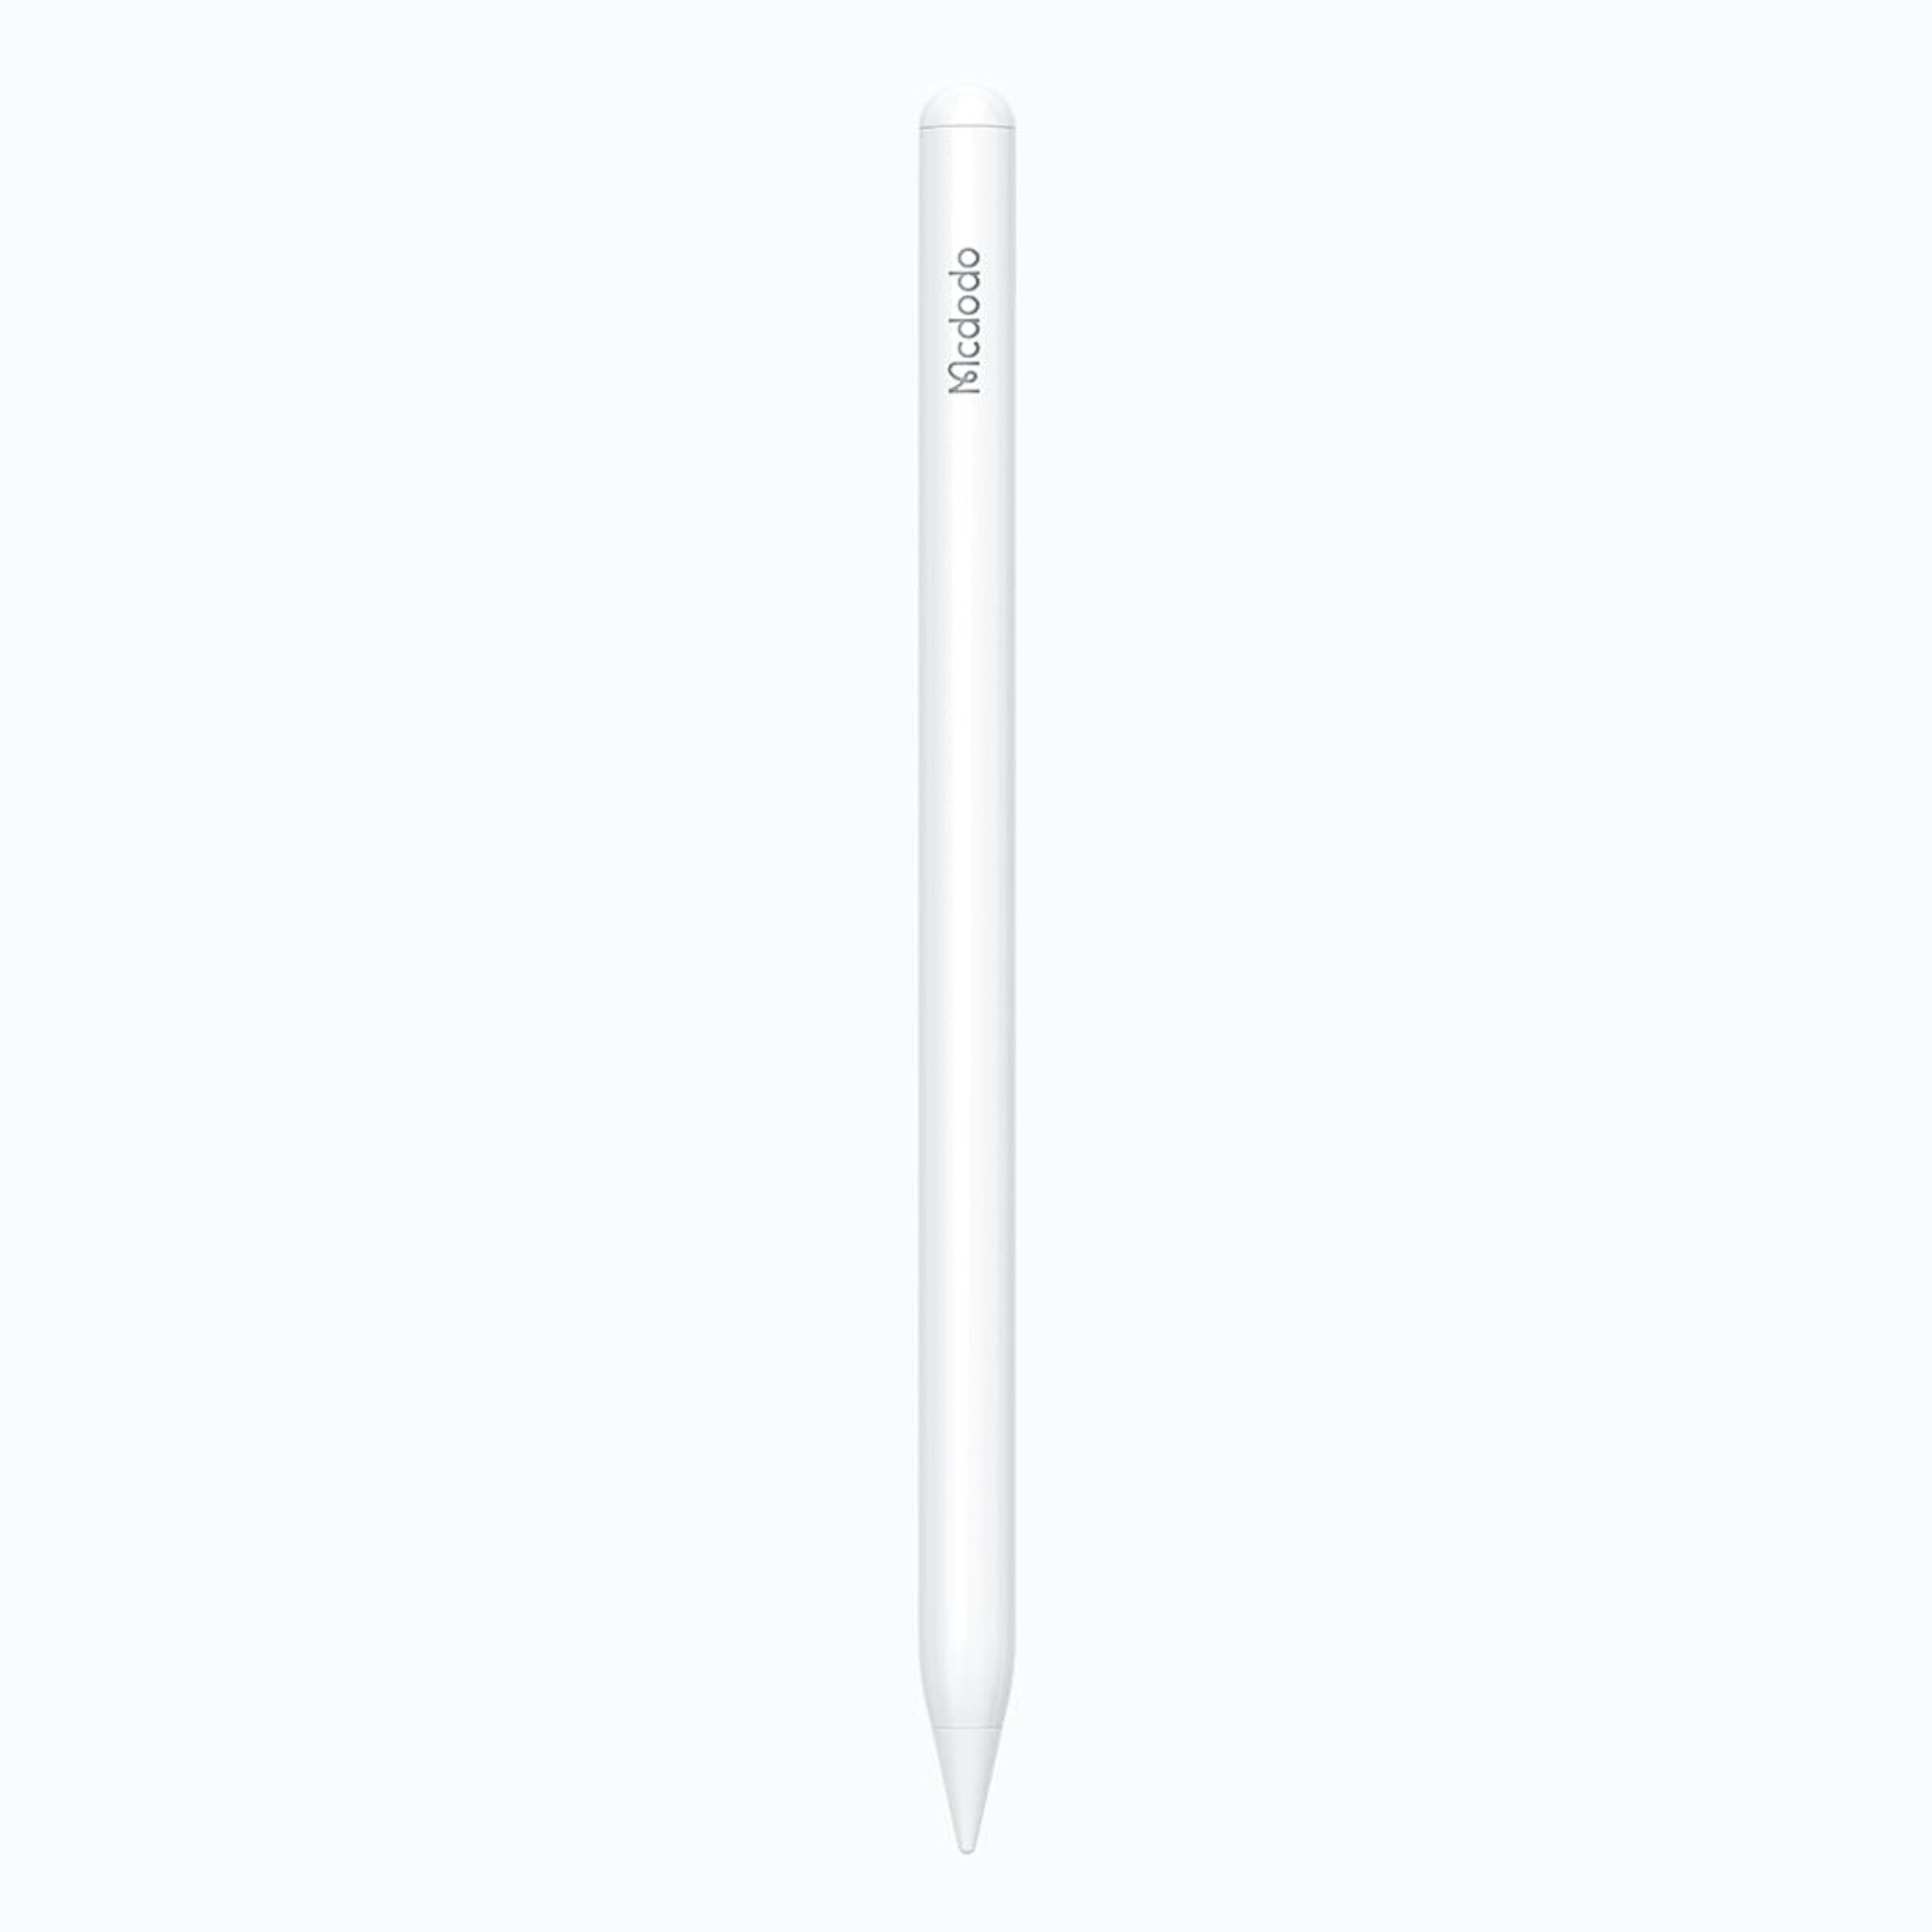 Mcdodo’dan uygun fiyatlı yeni nesil tablet kalemi